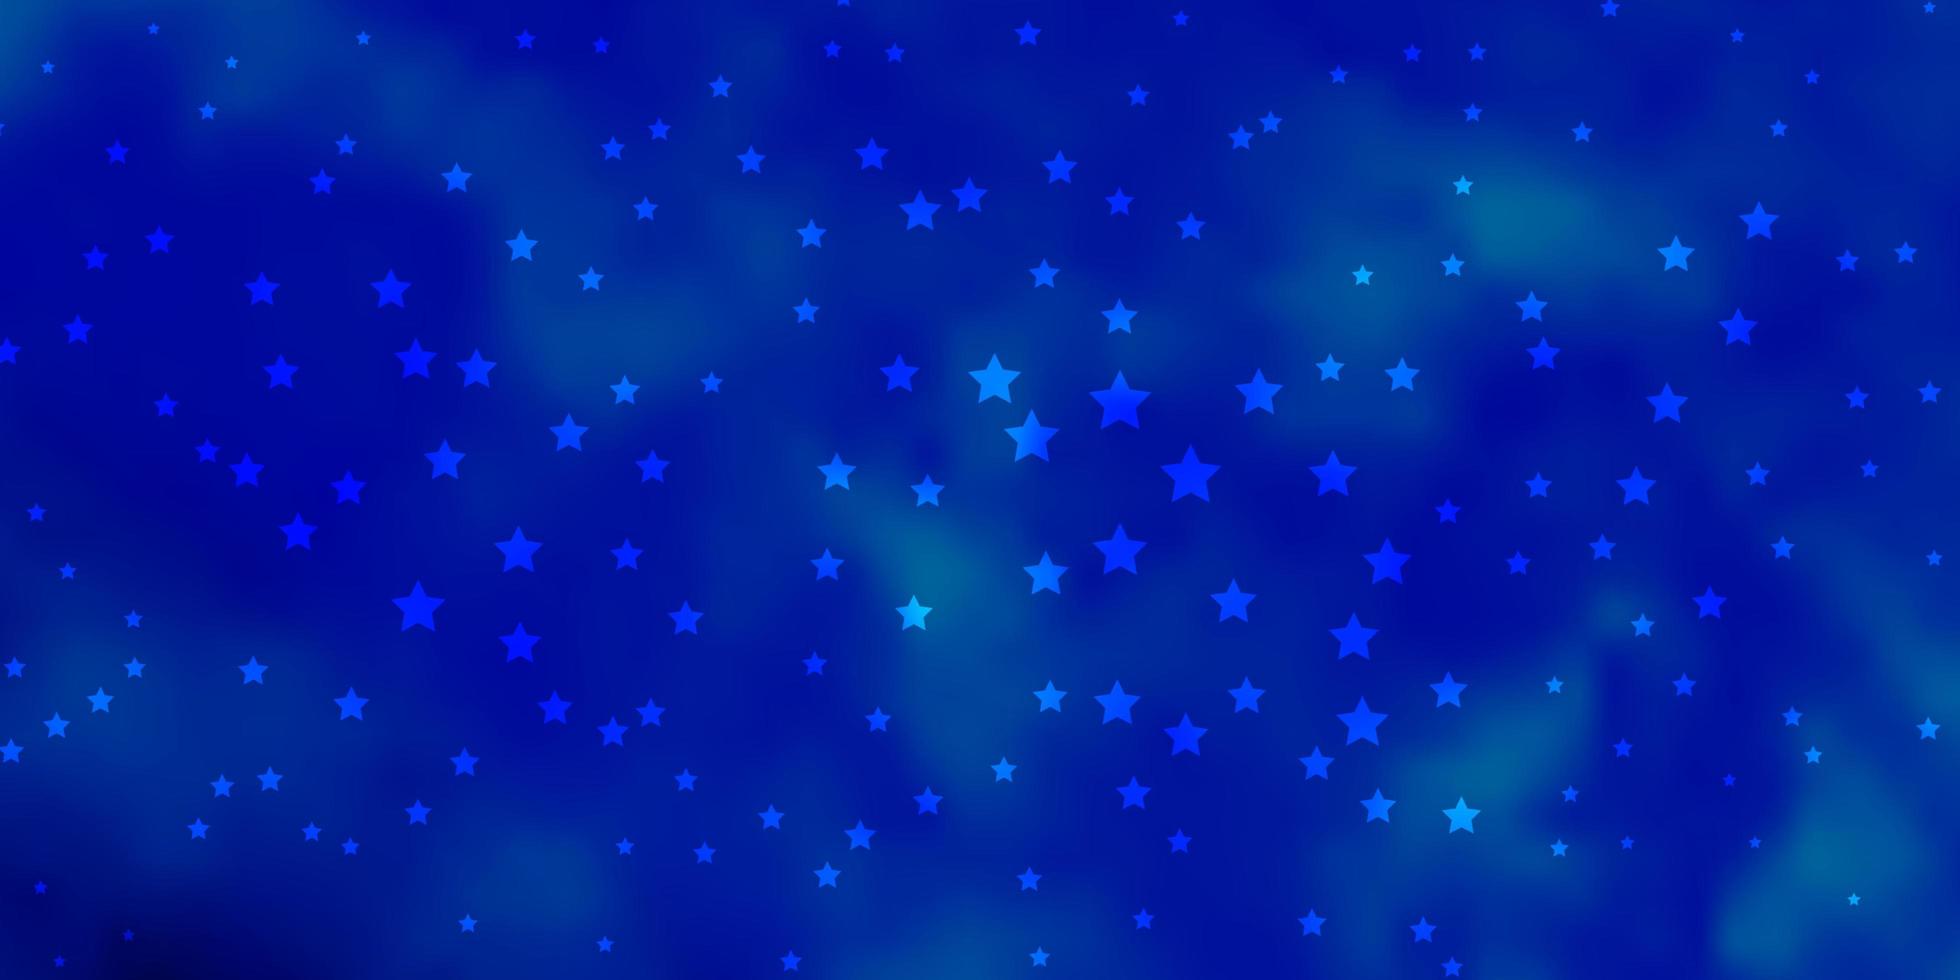 fond de vecteur bleu foncé avec des étoiles colorées illustration colorée avec motif abstrait étoiles dégradé pour les livrets publicitaires du nouvel an